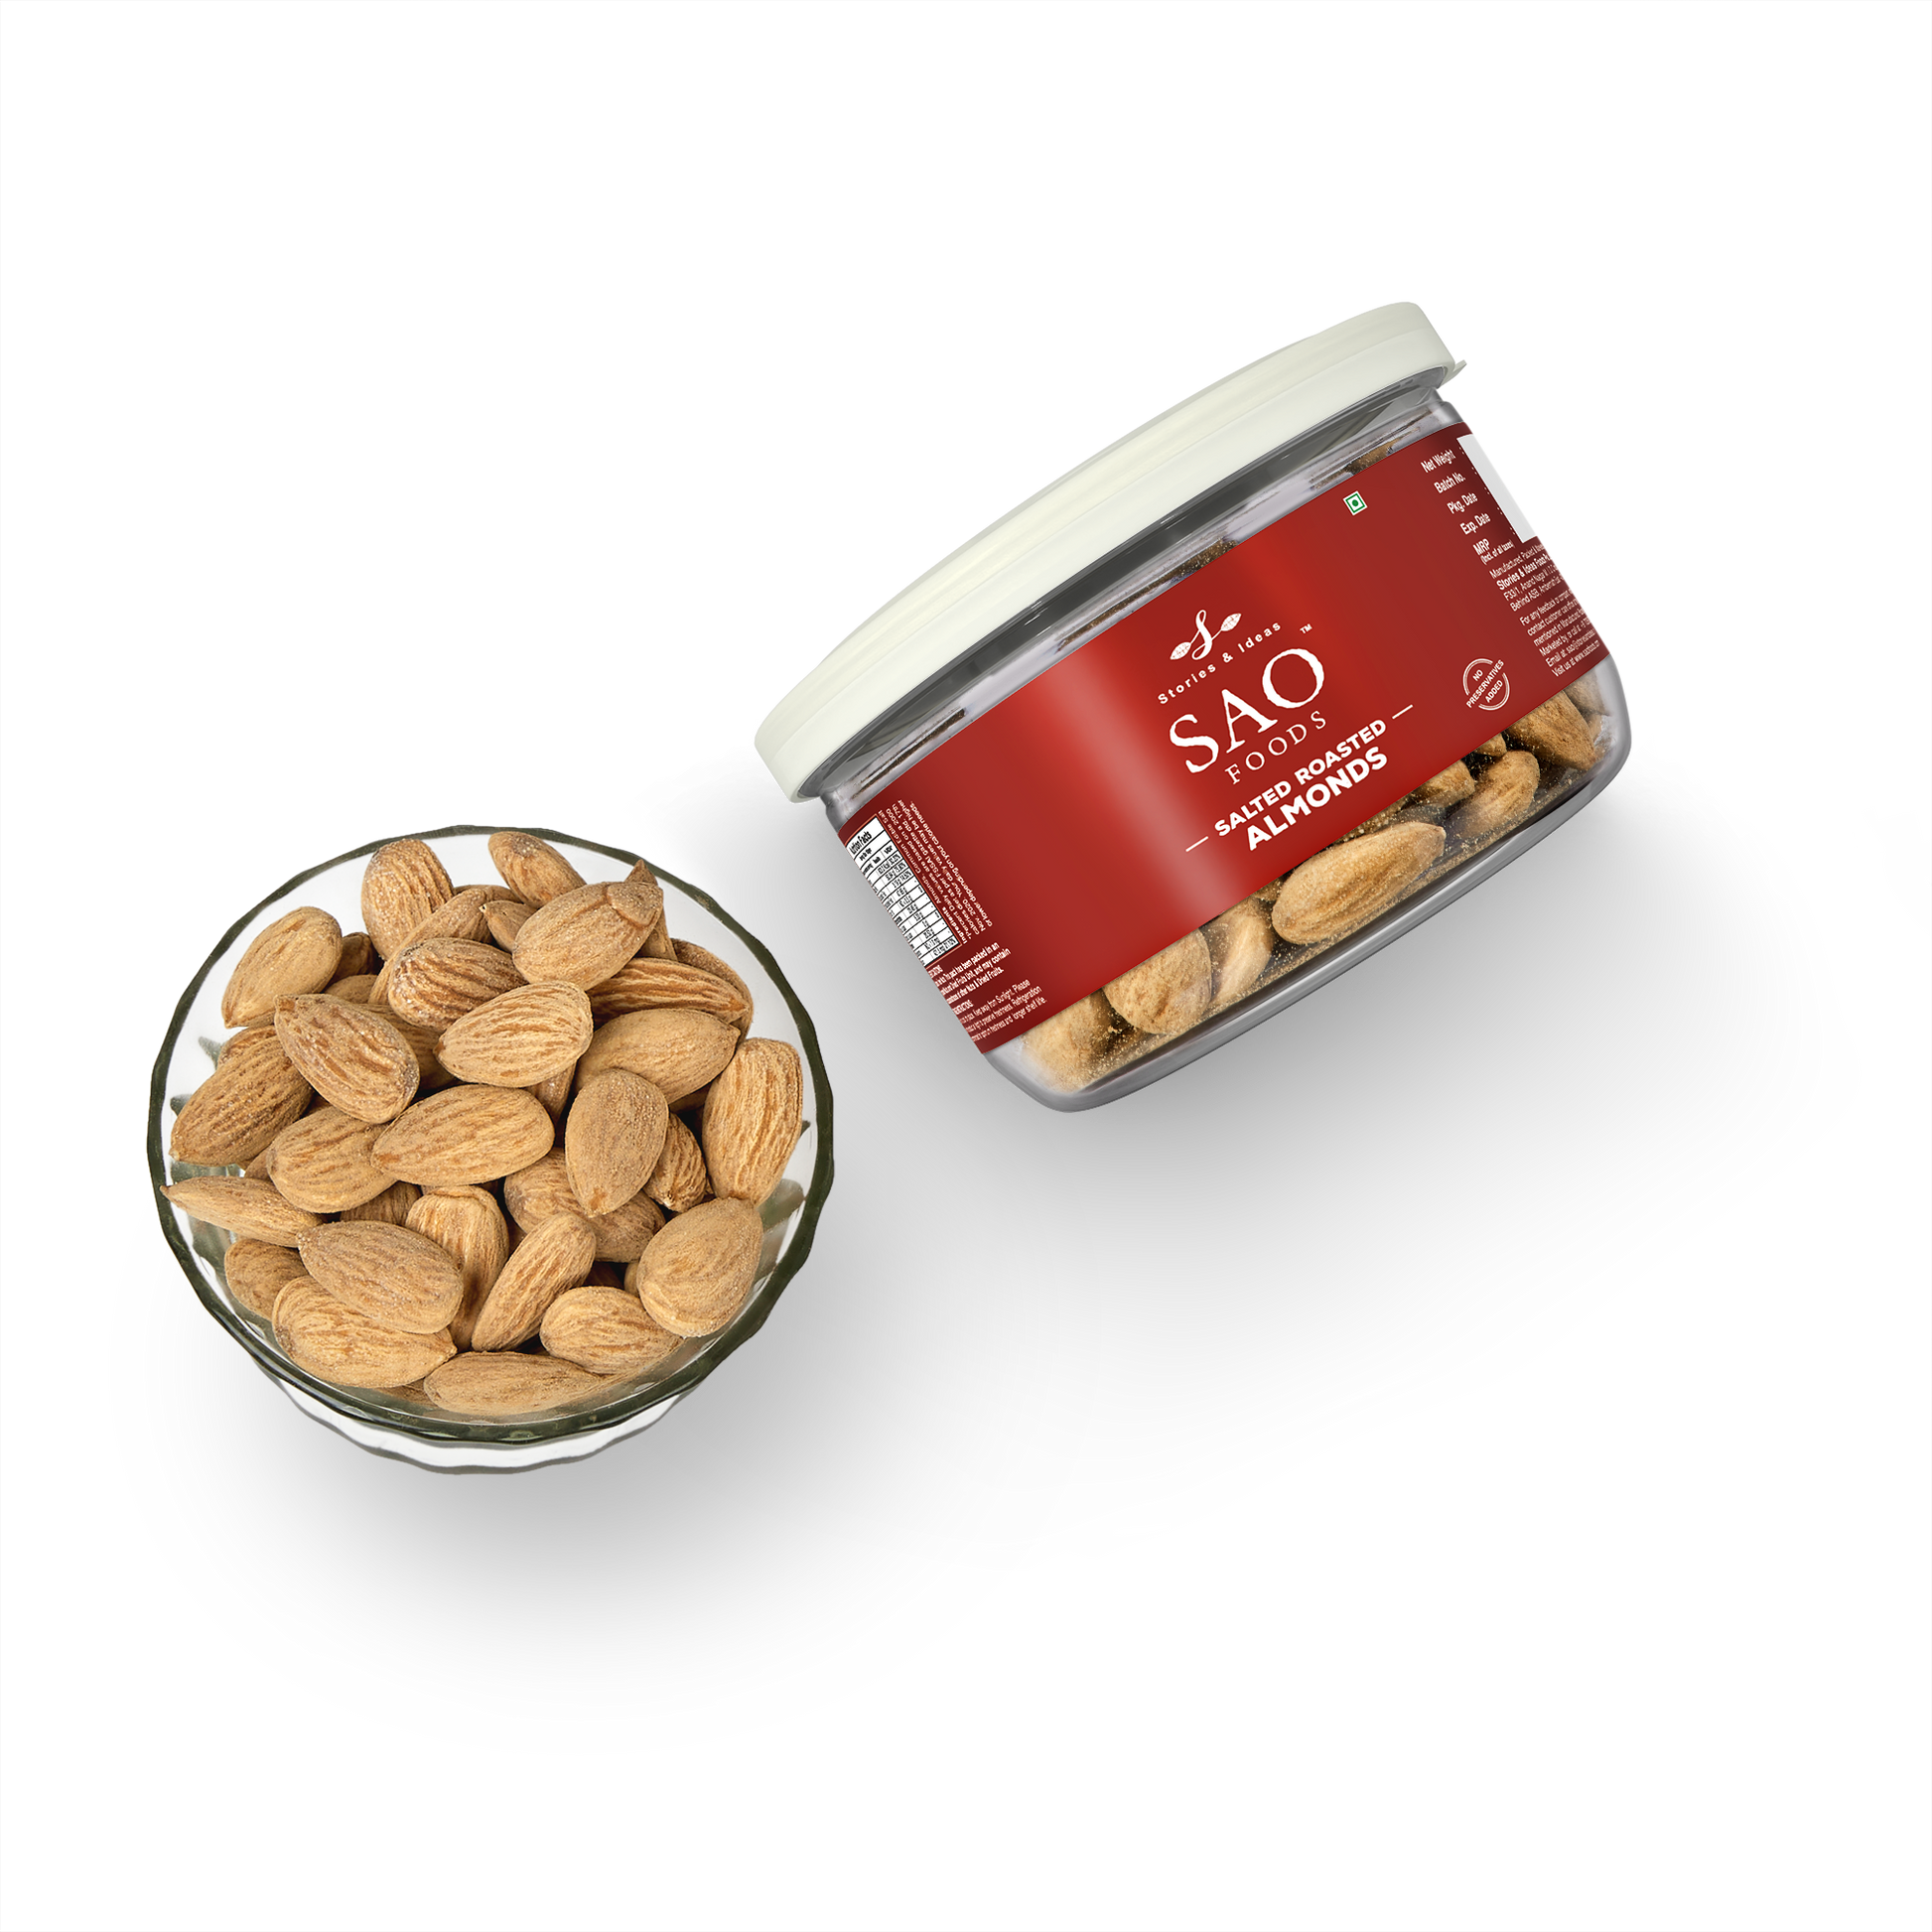 SAO Foods Salted Roasted Almonds 100 gm | Tin Cap PET Jar